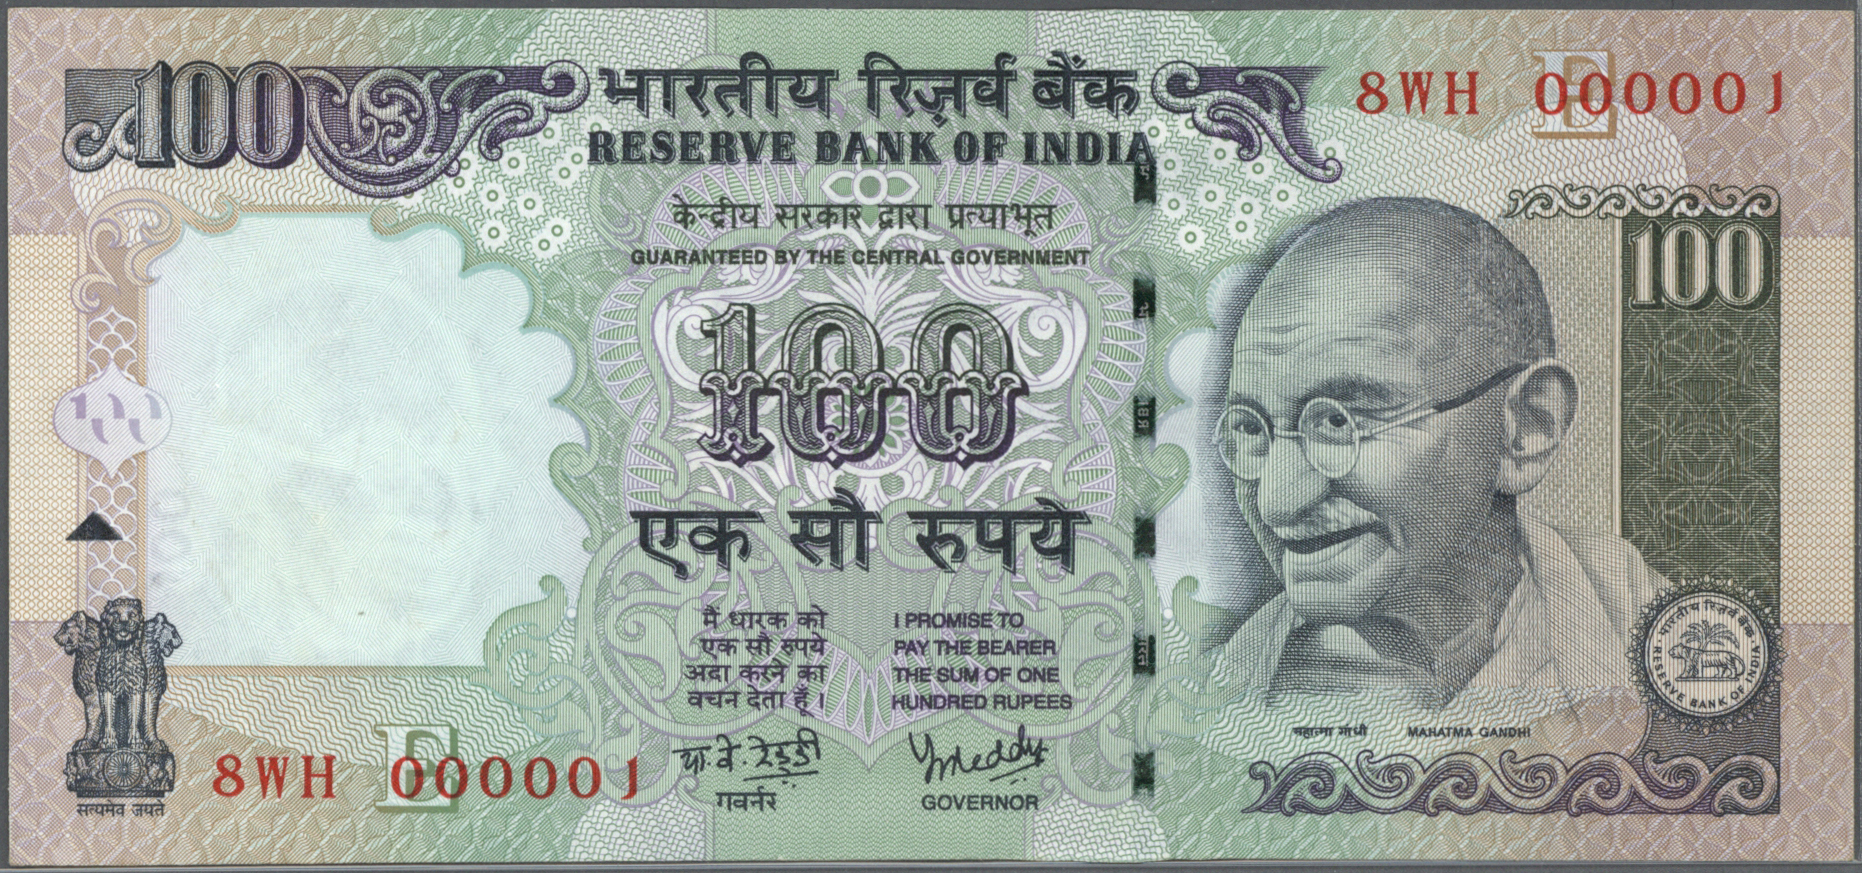 INDIA 100 RUPEES 2008 P 98 UNC